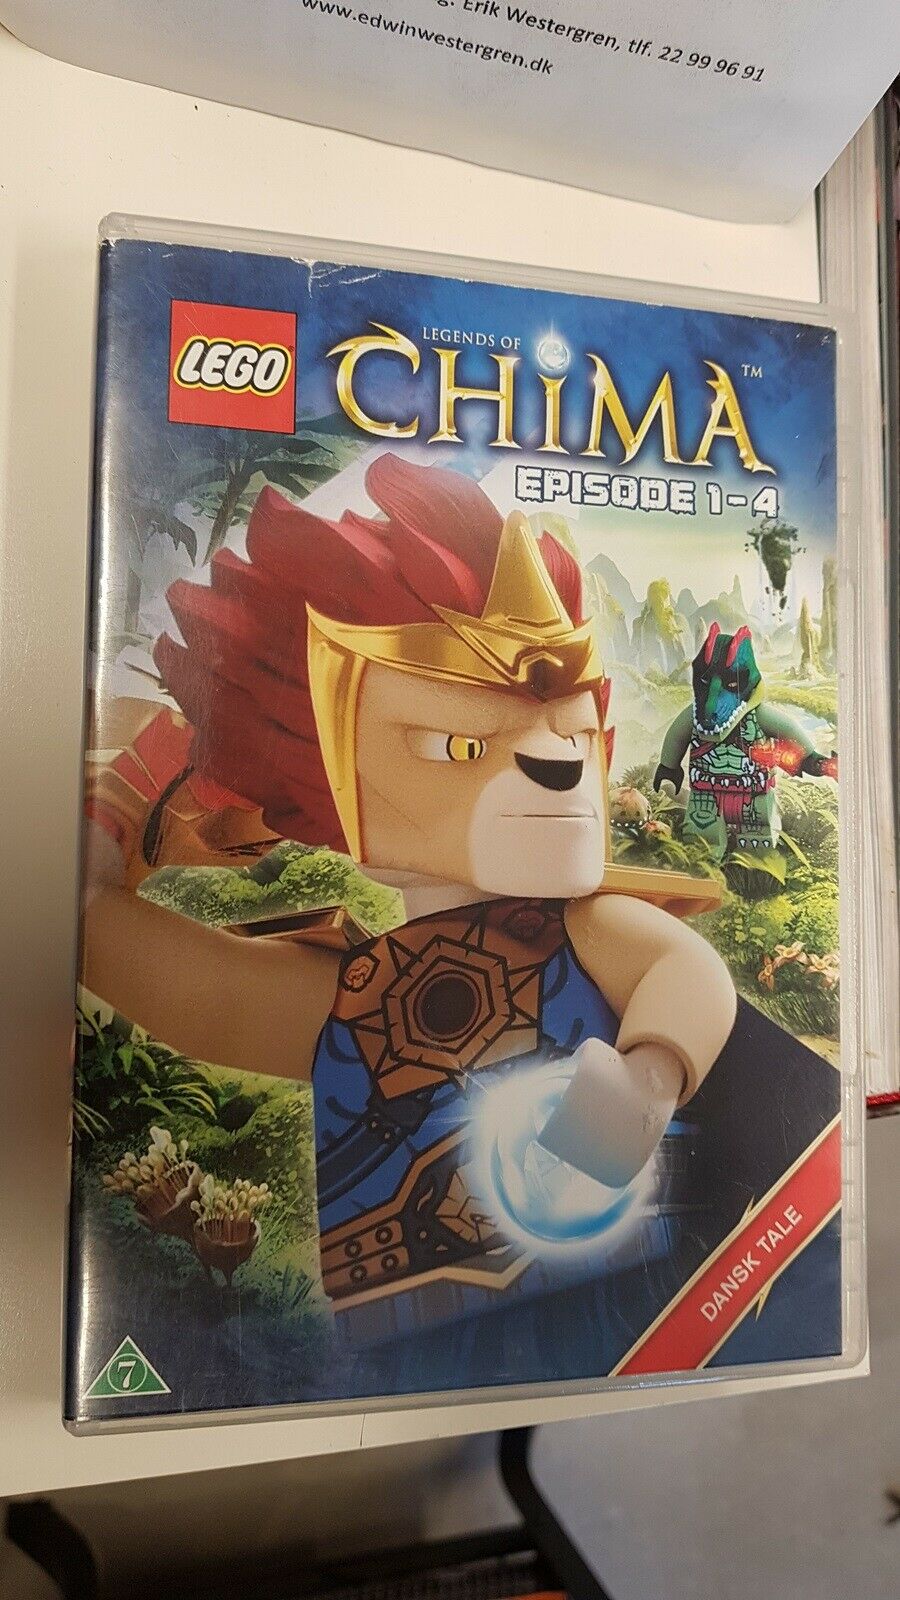 Lego chima episode 1-4, DVD, - dba.dk - Køb og Salg af Nyt og